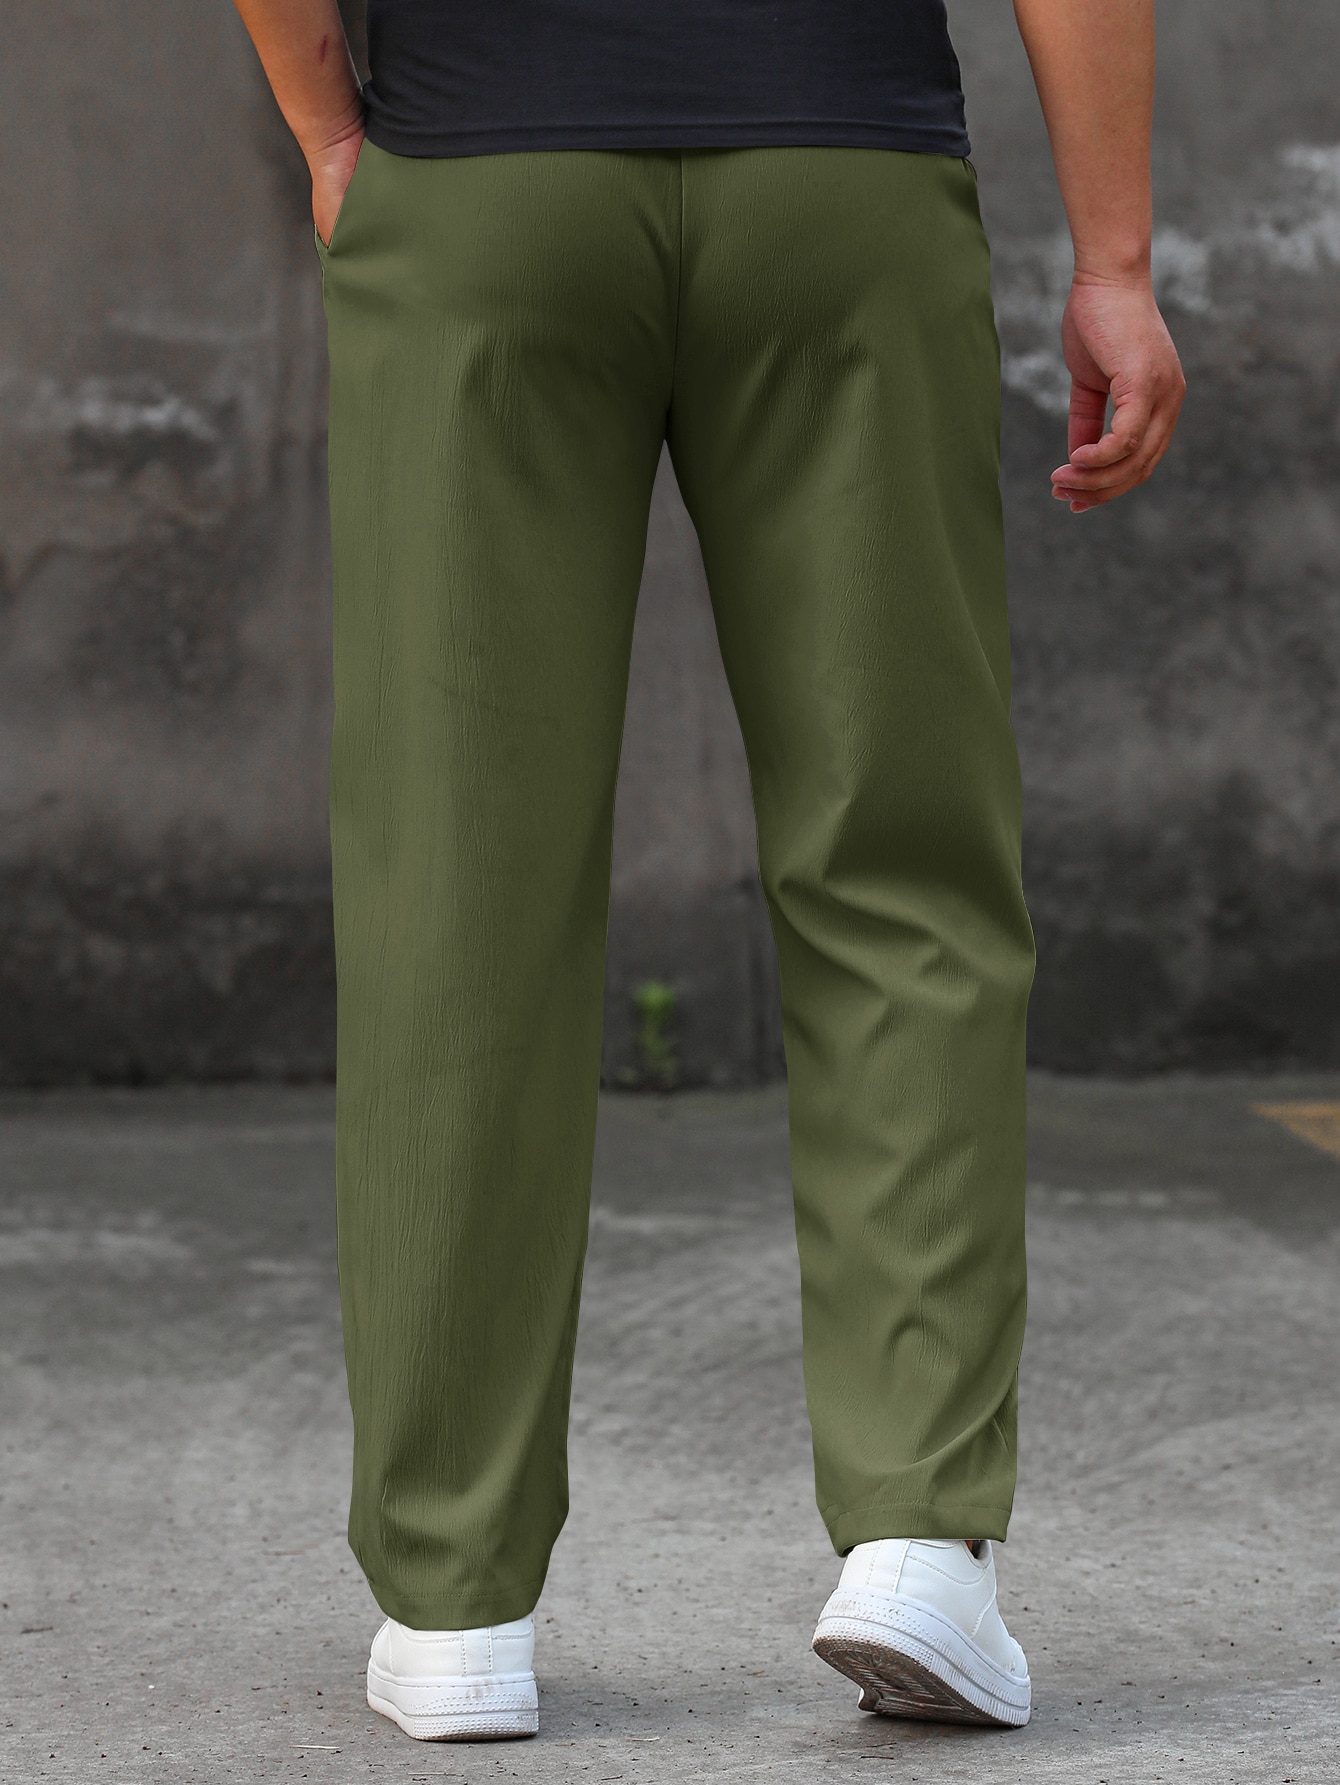 Мужские прямые брюки свободного кроя Manfinity Homme с буквенными нашивками и шнурком на талии, армейский зеленый